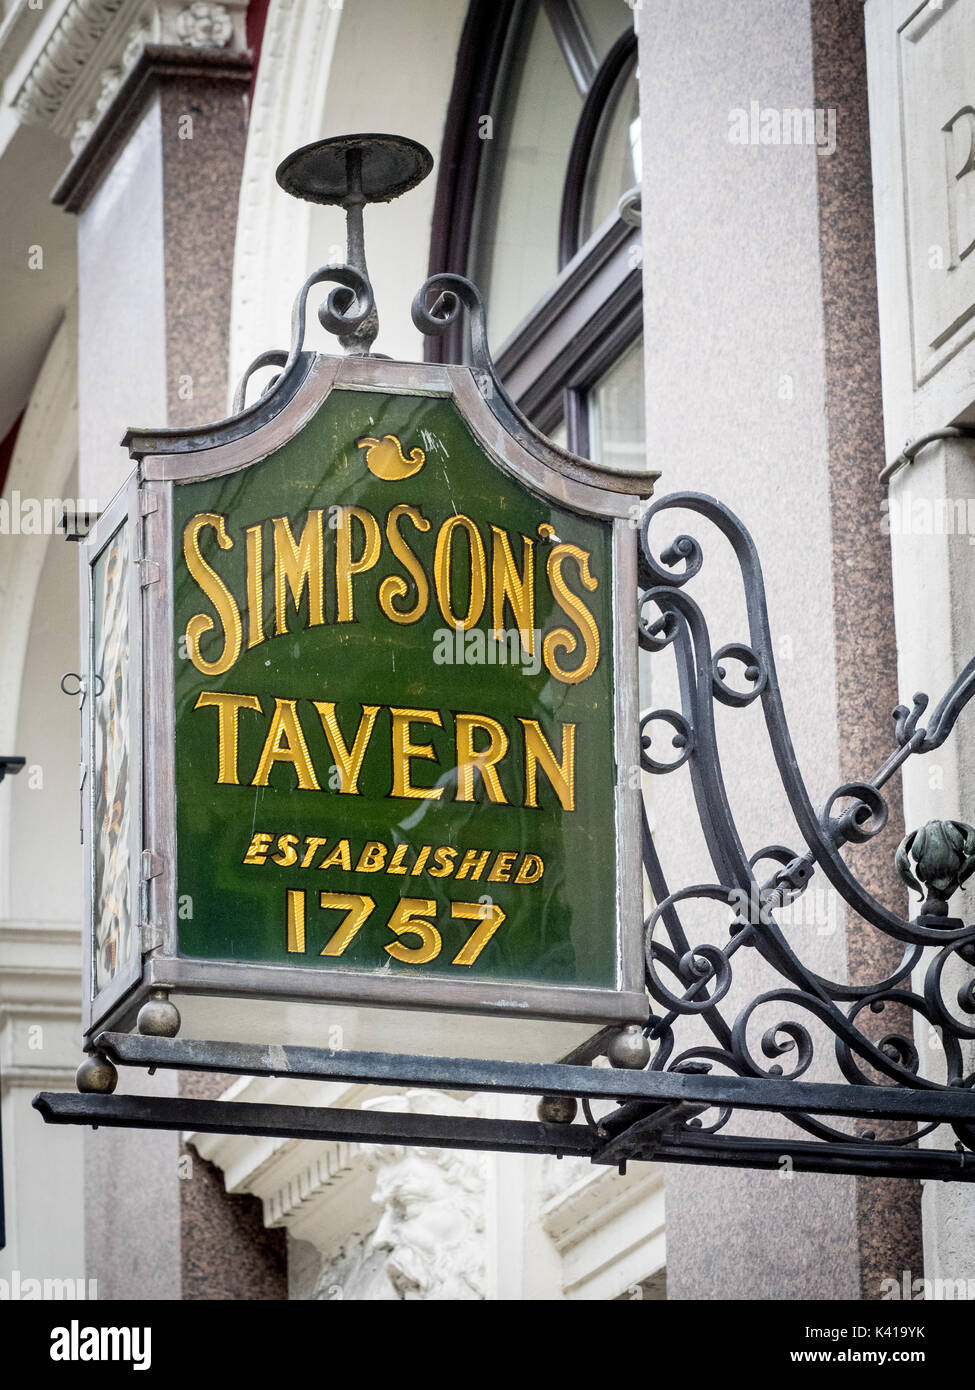 Simpsons Tavern sign in Ball, Cornhill dans la ville de Londres quartier financier. La taverne a été fondée en 1757 sur son site actuel. Banque D'Images